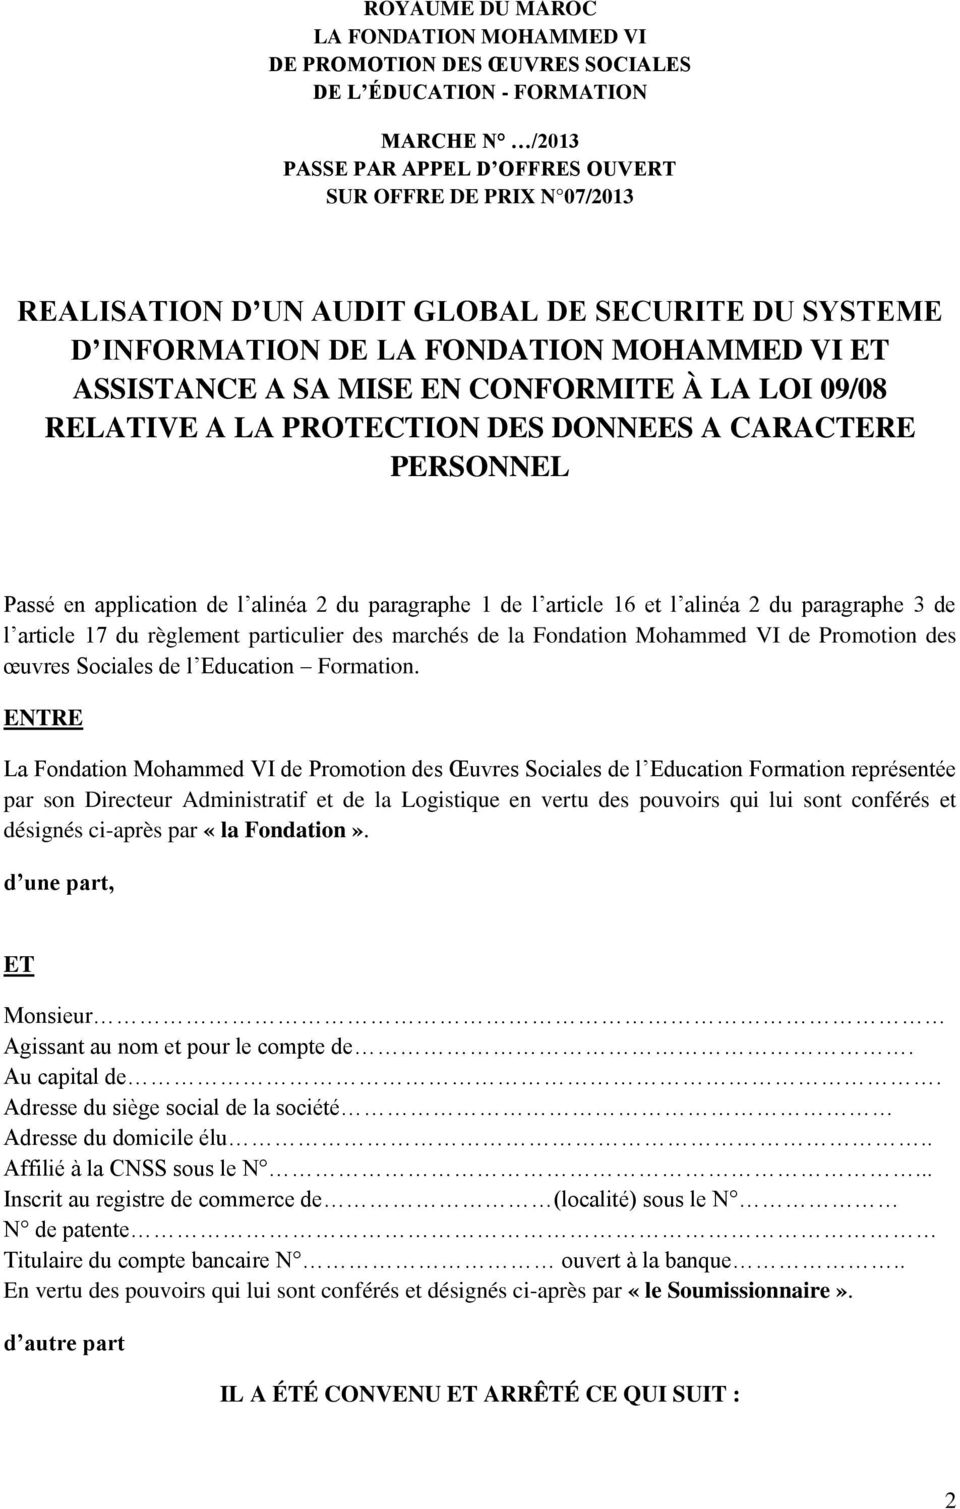 application de l alinéa 2 du paragraphe 1 de l article 16 et l alinéa 2 du paragraphe 3 de l article 17 du règlement particulier des marchés de la Fondation Mohammed VI de Promotion des œuvres